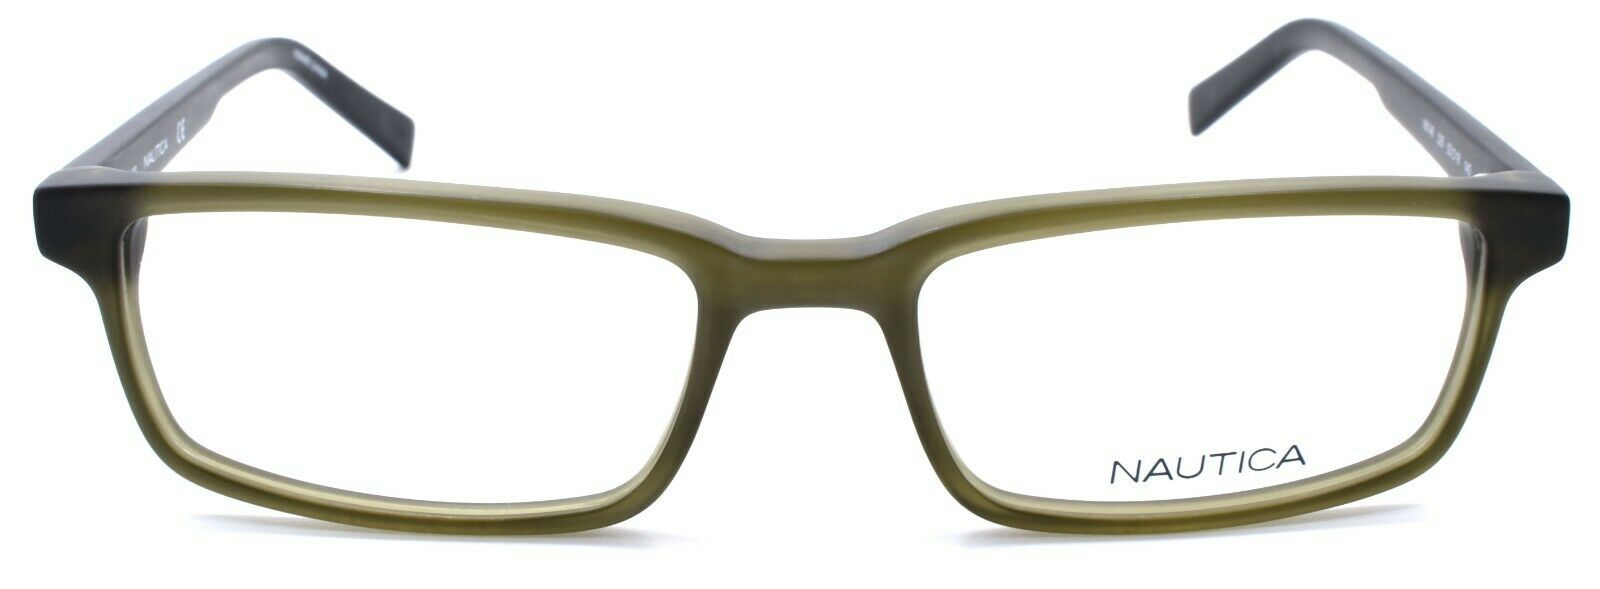 2-Nautica N8146 325 Men's Eyeglasses Frames 53-18-140 Matte Olive-688940460513-IKSpecs